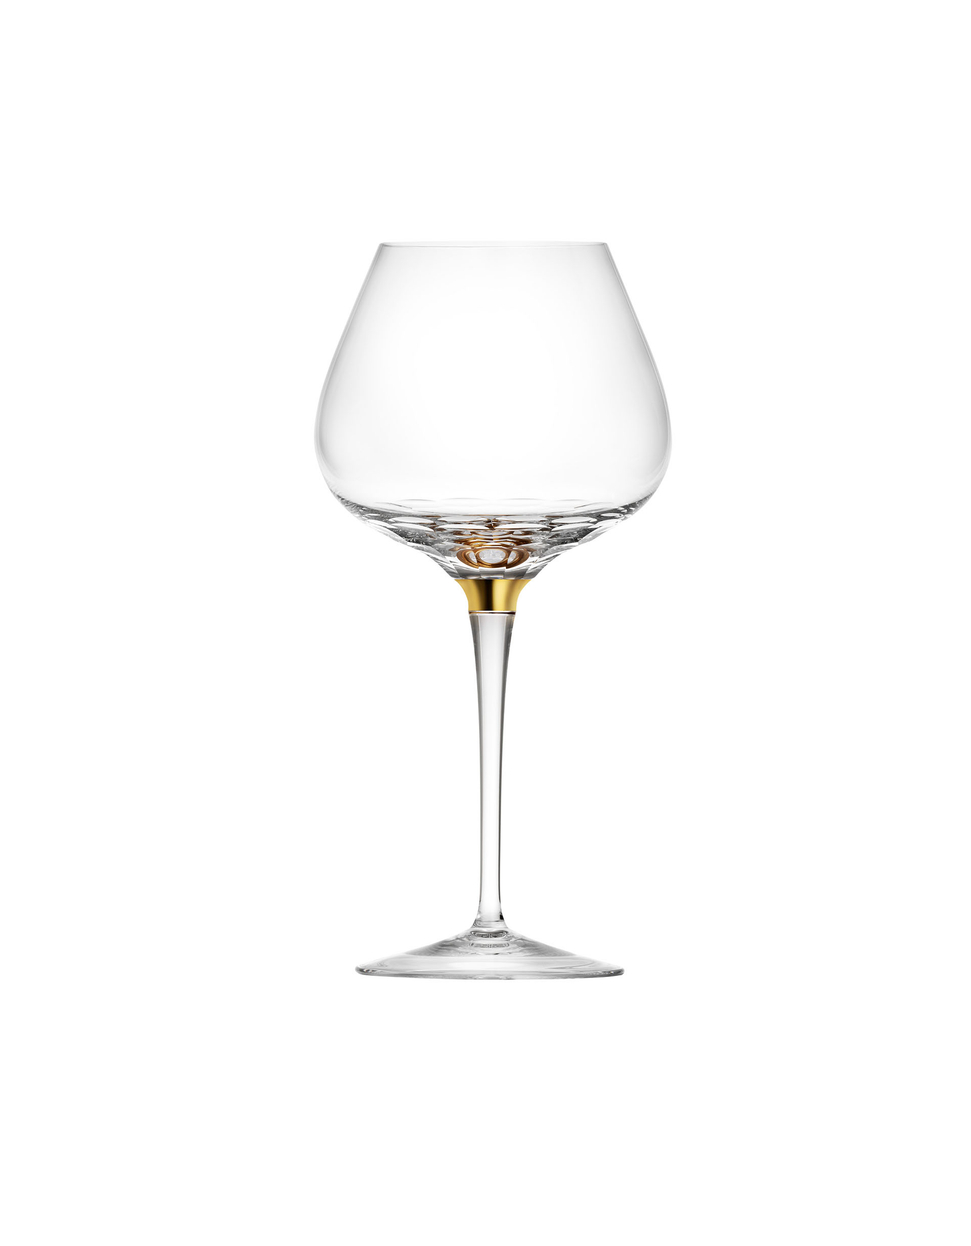 Jewel wine glass, 800 ml